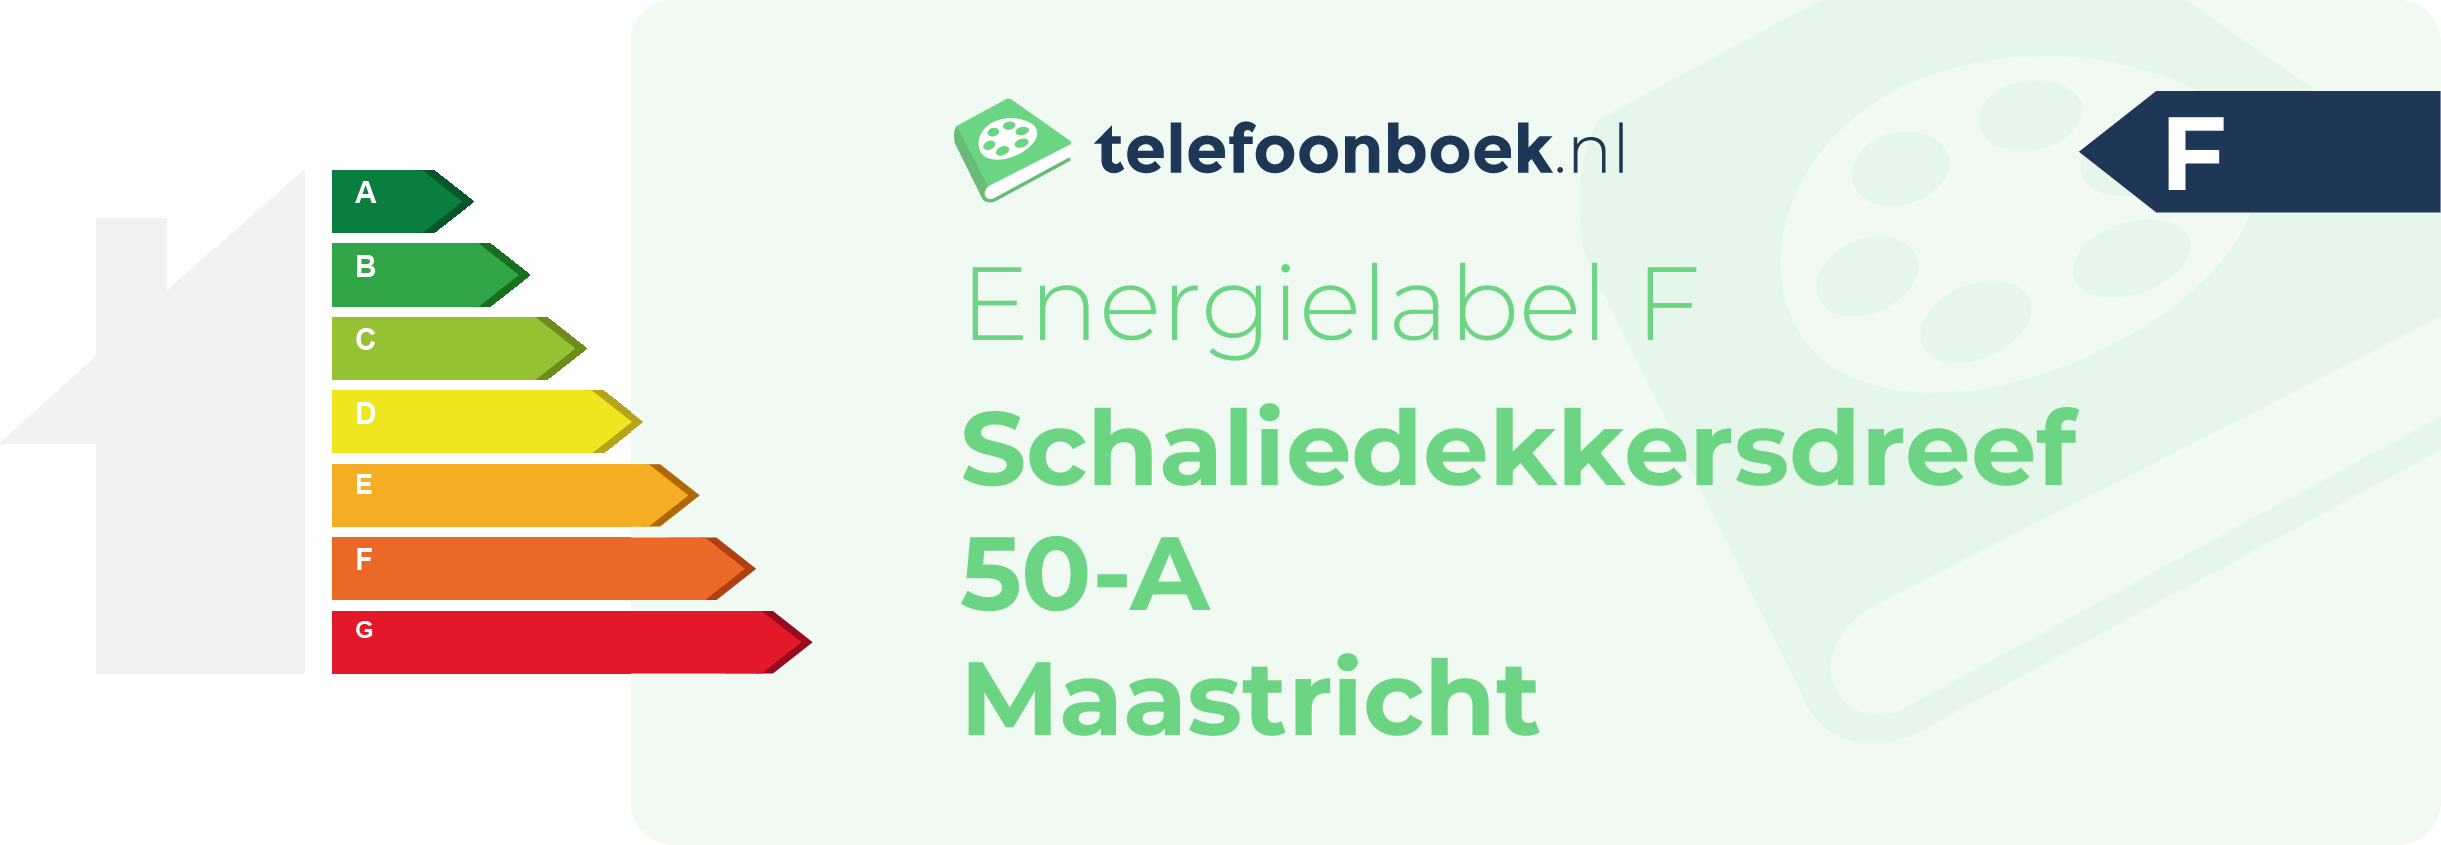 Energielabel Schaliedekkersdreef 50-A Maastricht